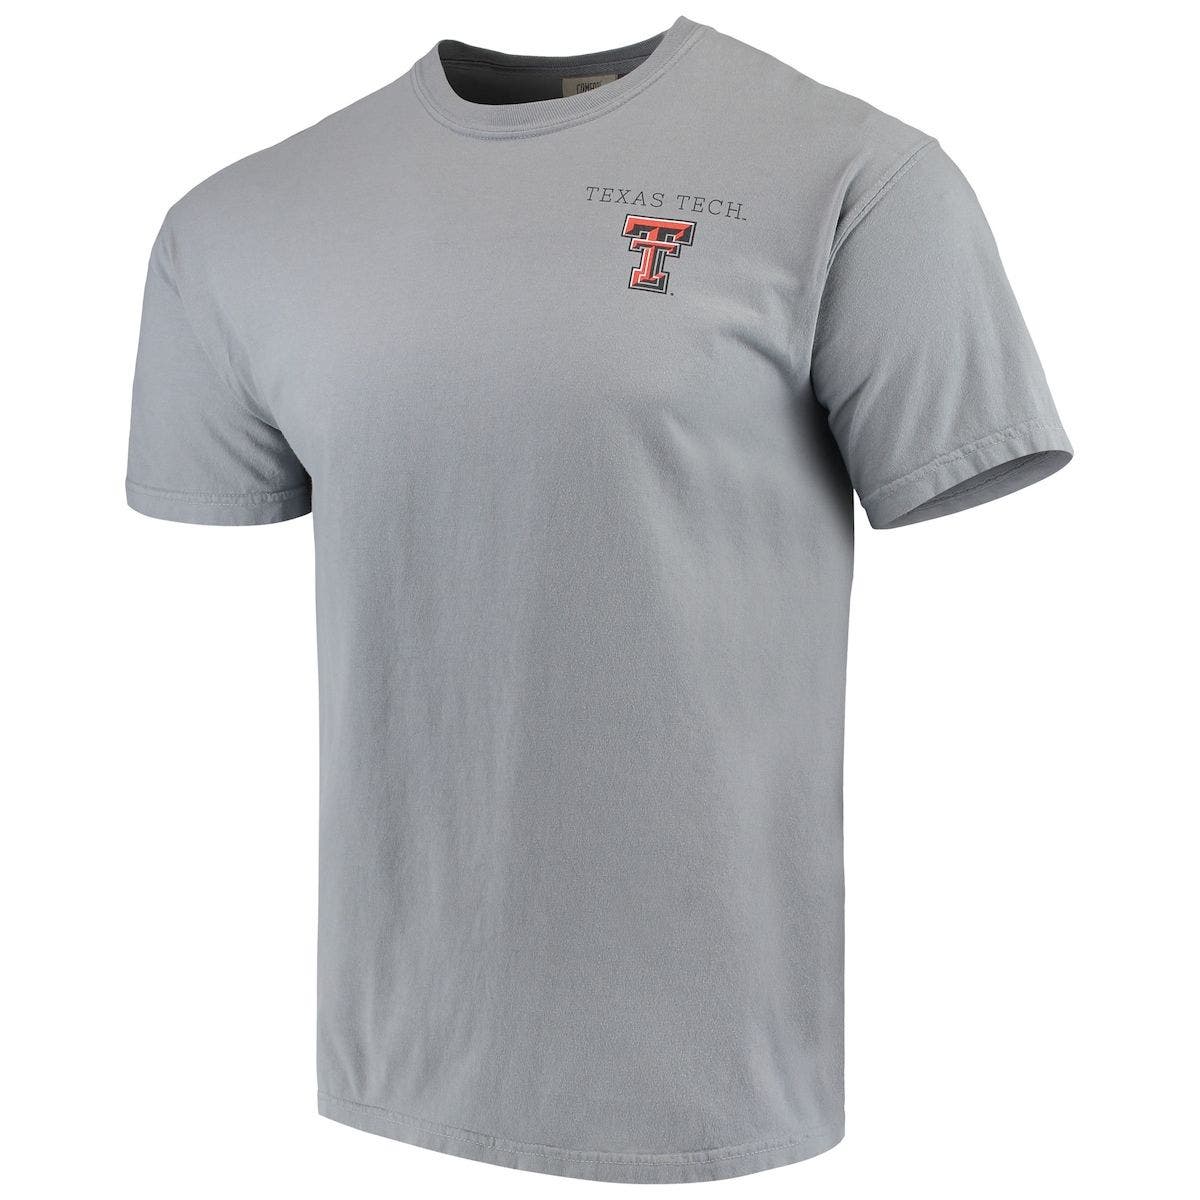 Black Texas Tech Raiders T-shirt Size M